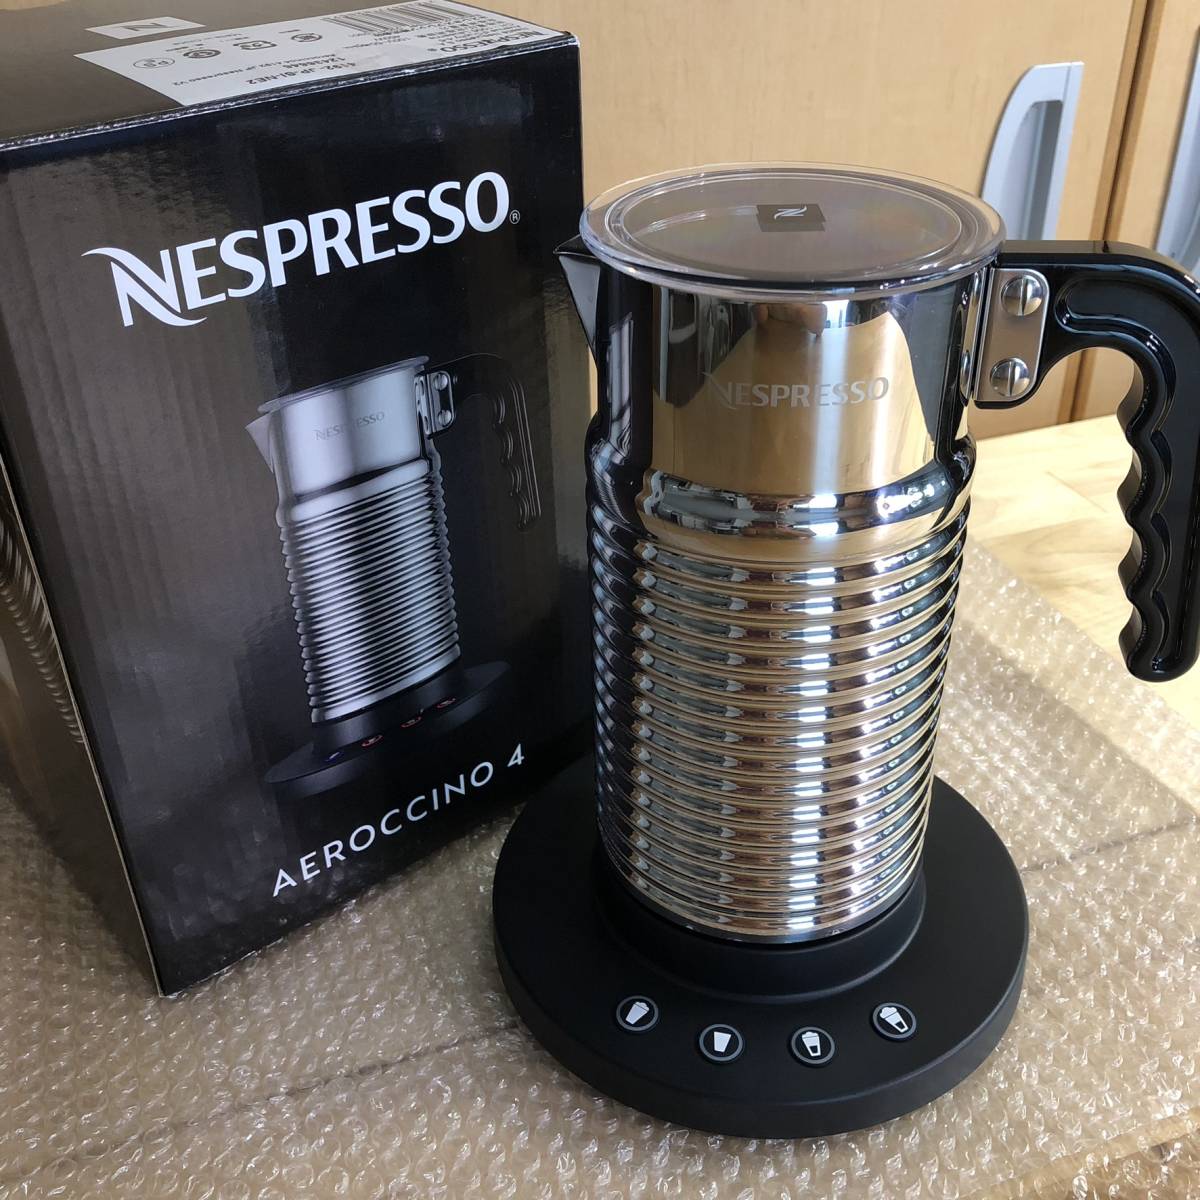 あなたにおすすめの商品 ネスプレッソ エアロチーノ4 コーヒーメーカー